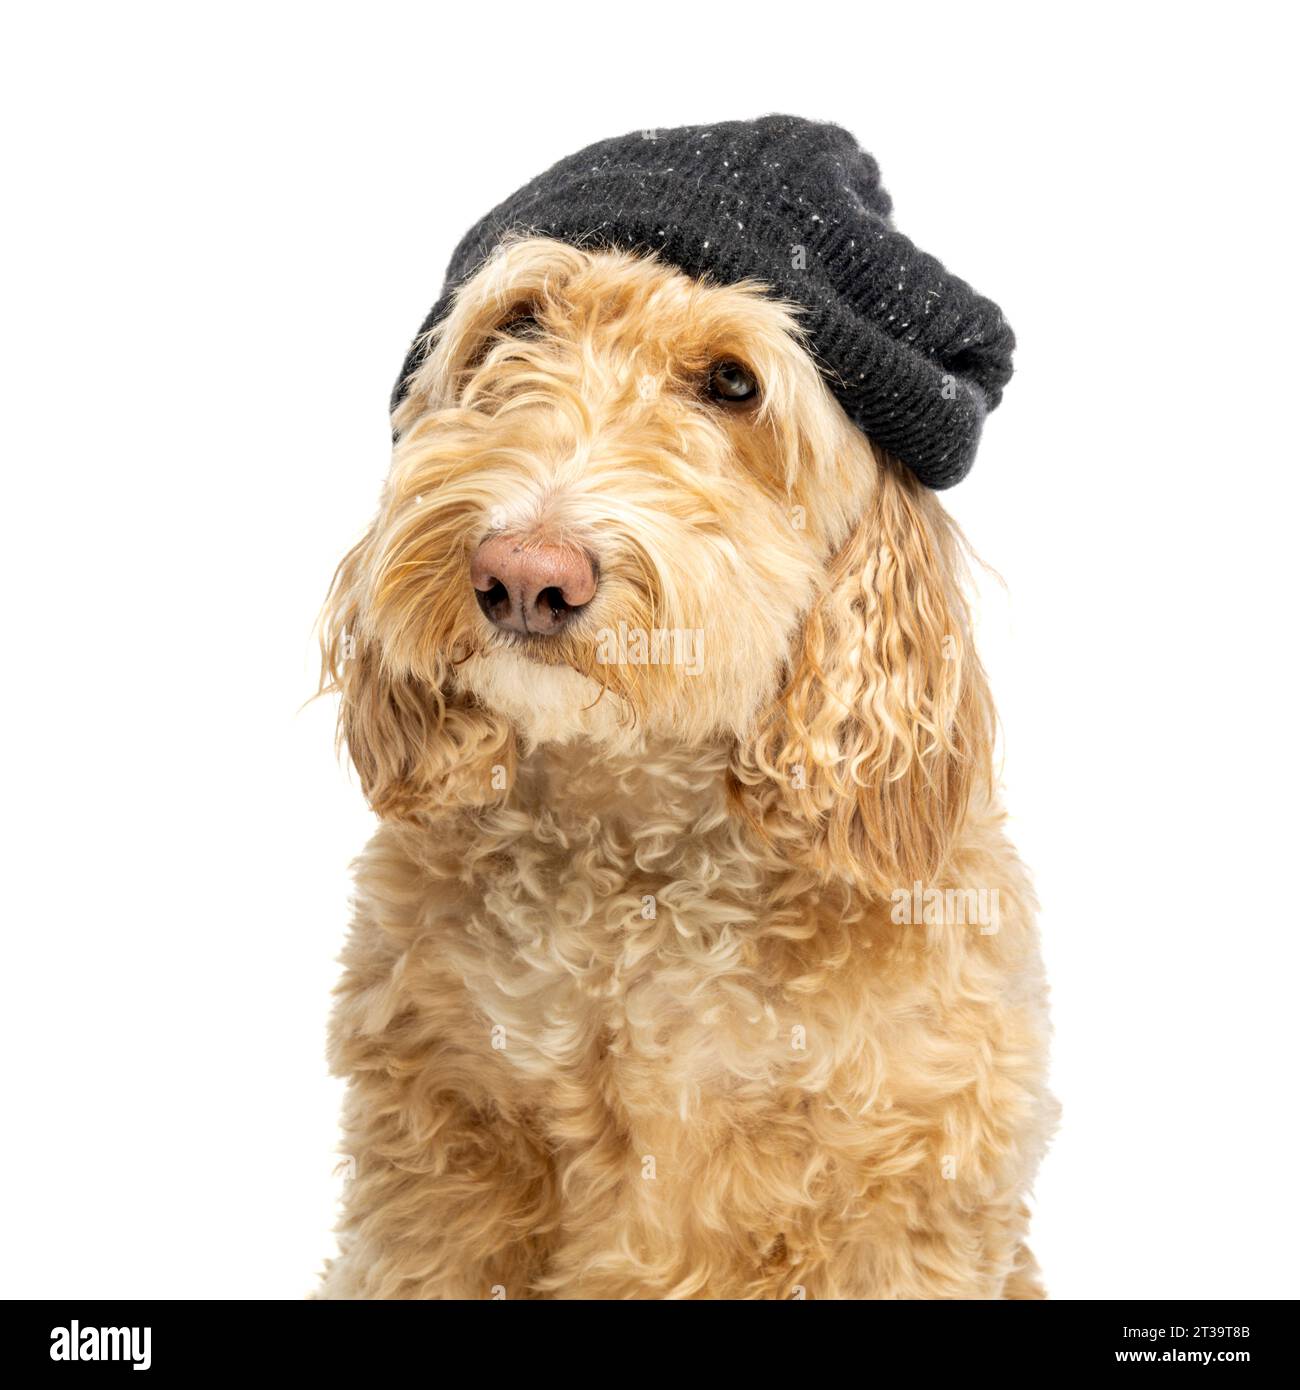 Foto della testa e delle spalle di un cane biondo Cockapoo che indossa un berretto in maglia nera visto su uno sfondo bianco Foto Stock